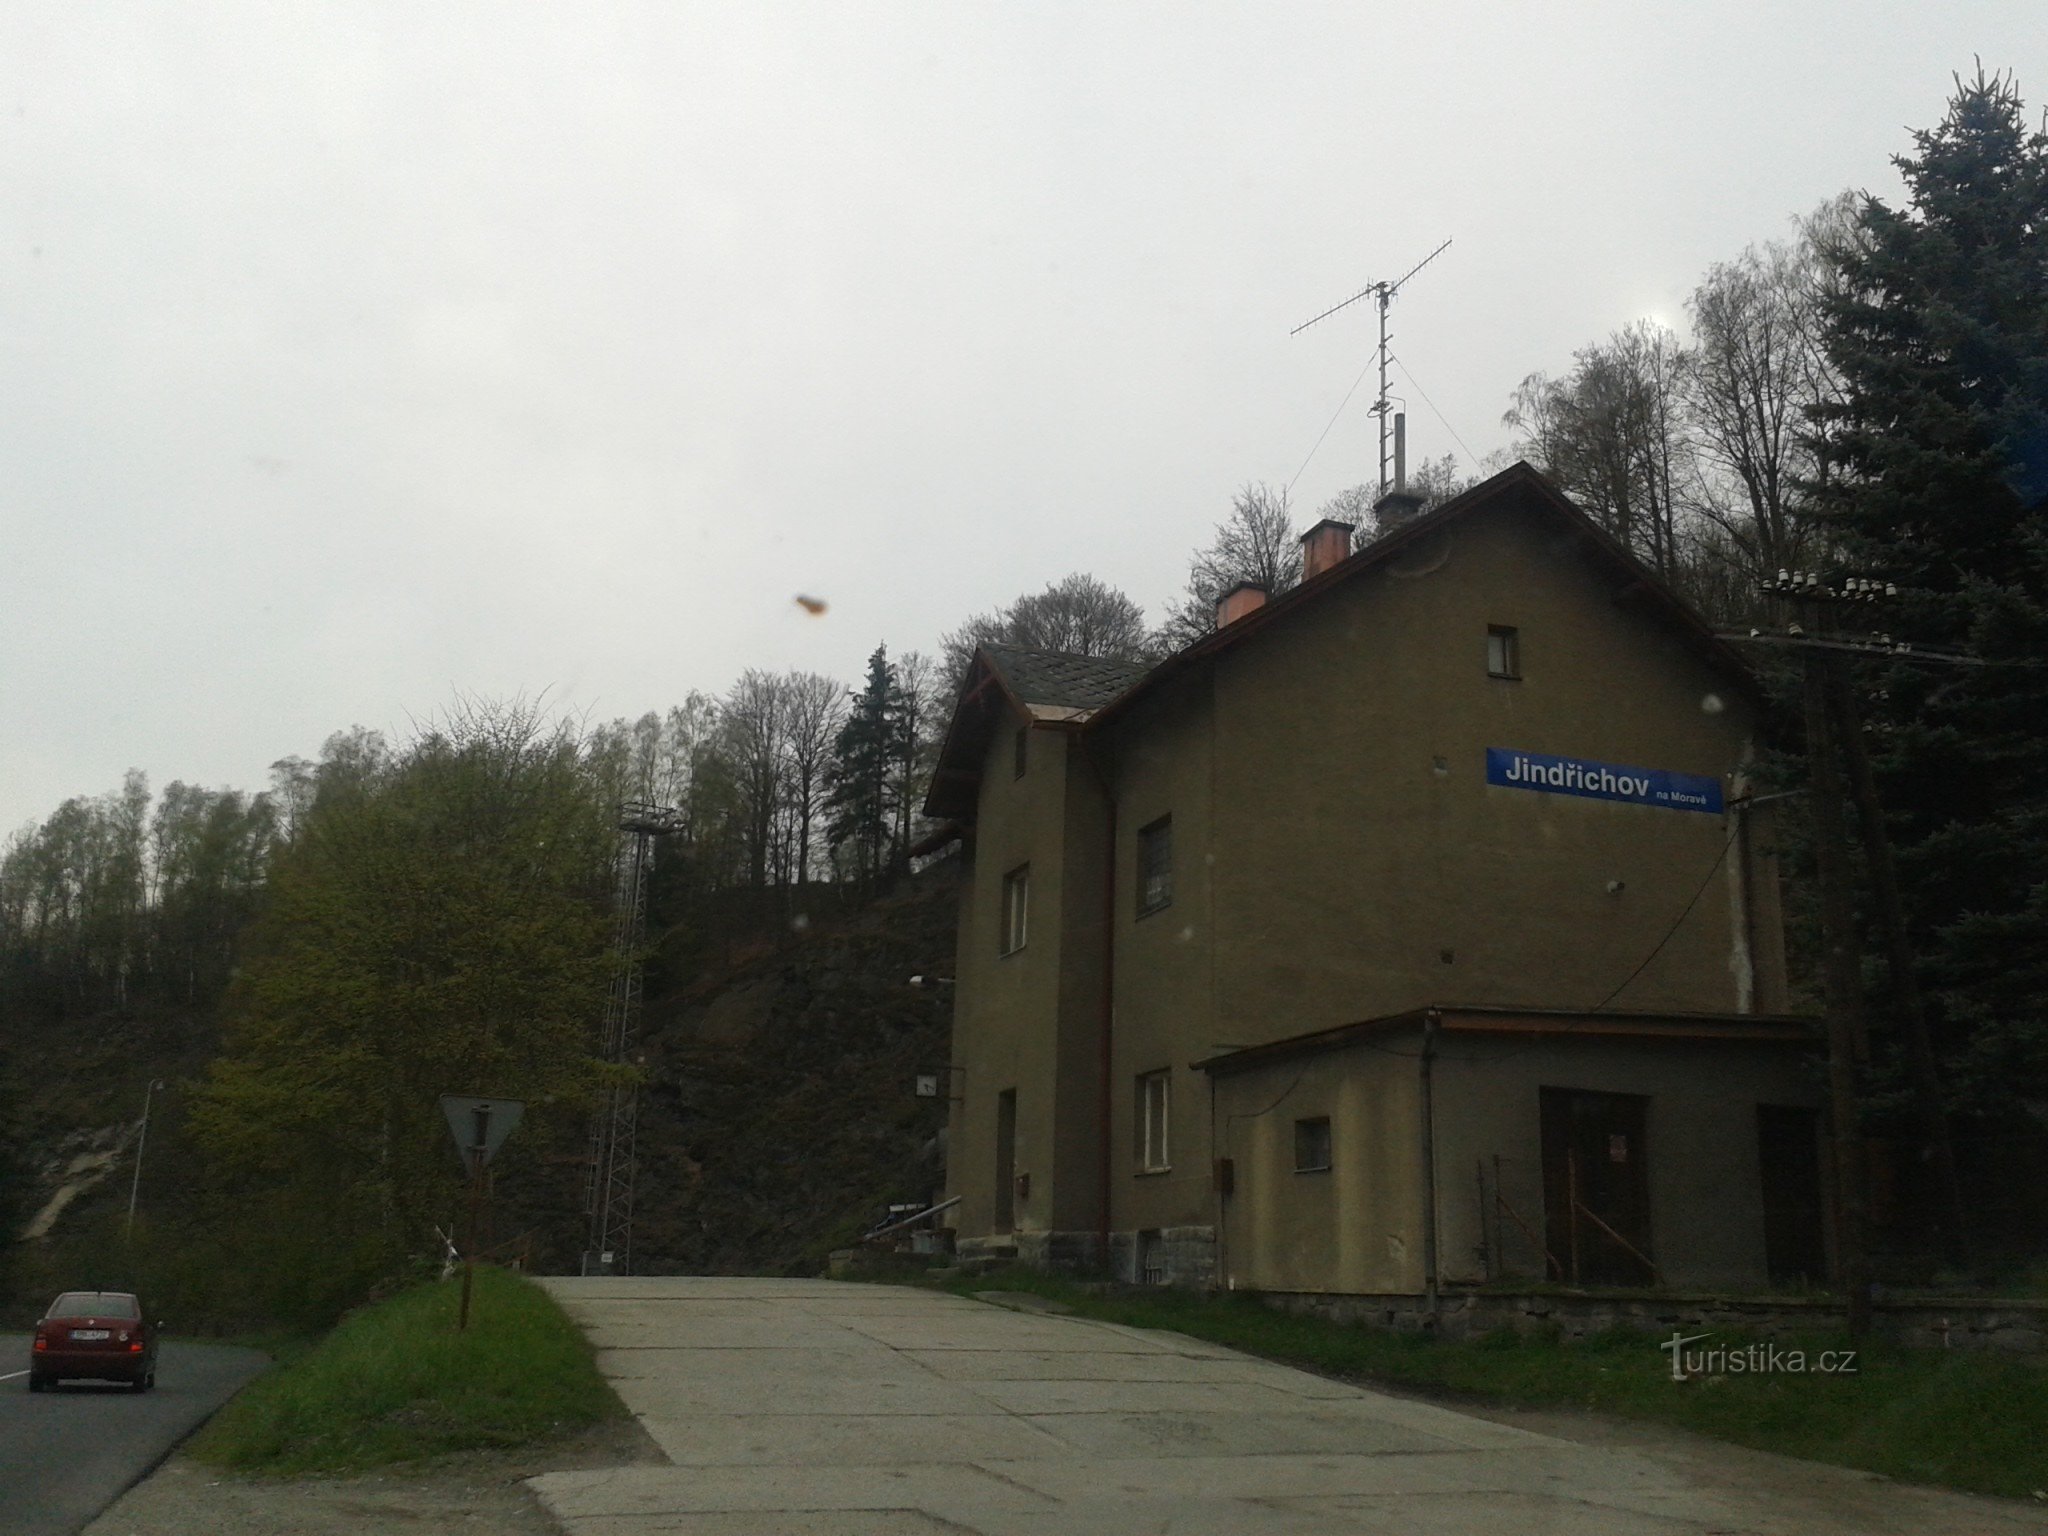 Jindřichov Morvaországban - egykori papírgyár és vasútállomás, ahol megállt az idő, Šumperk kerület